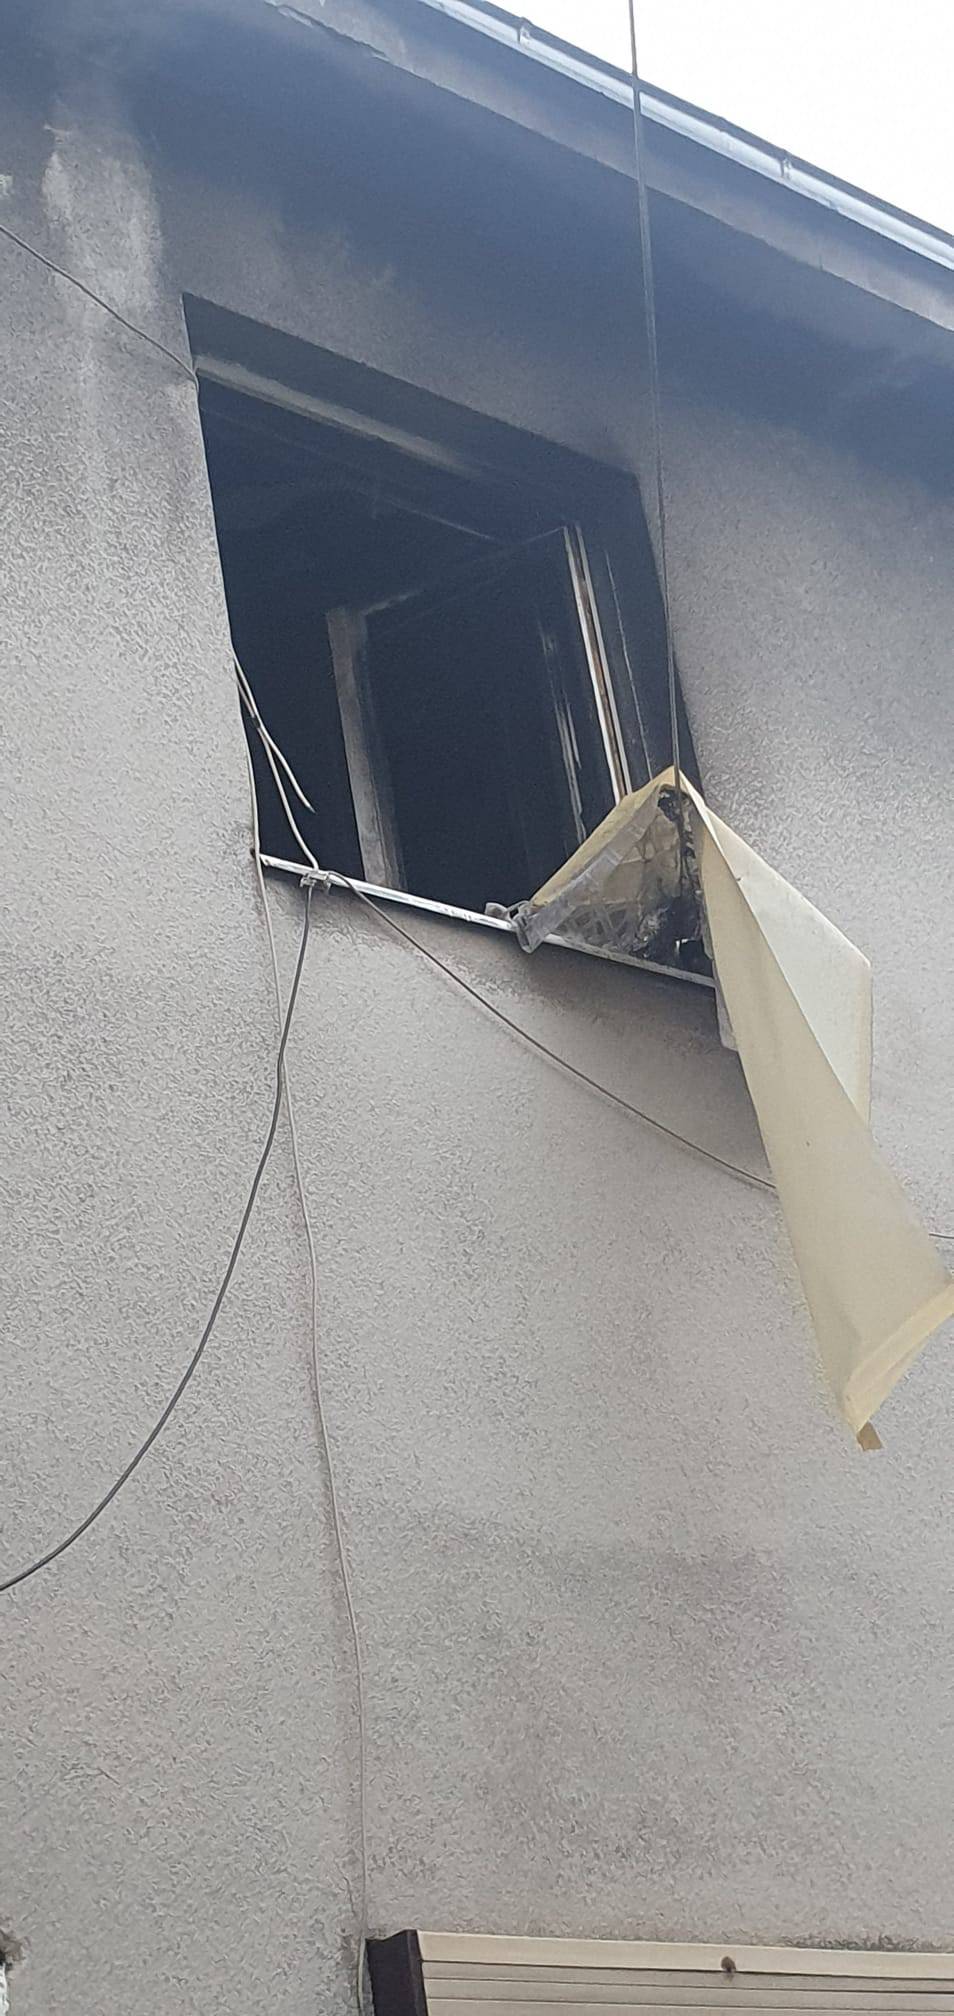 Drama u Zagrebu: Moguća eksplozija u stanu na četvrtom katu, vatrogasci spasili čovjeka